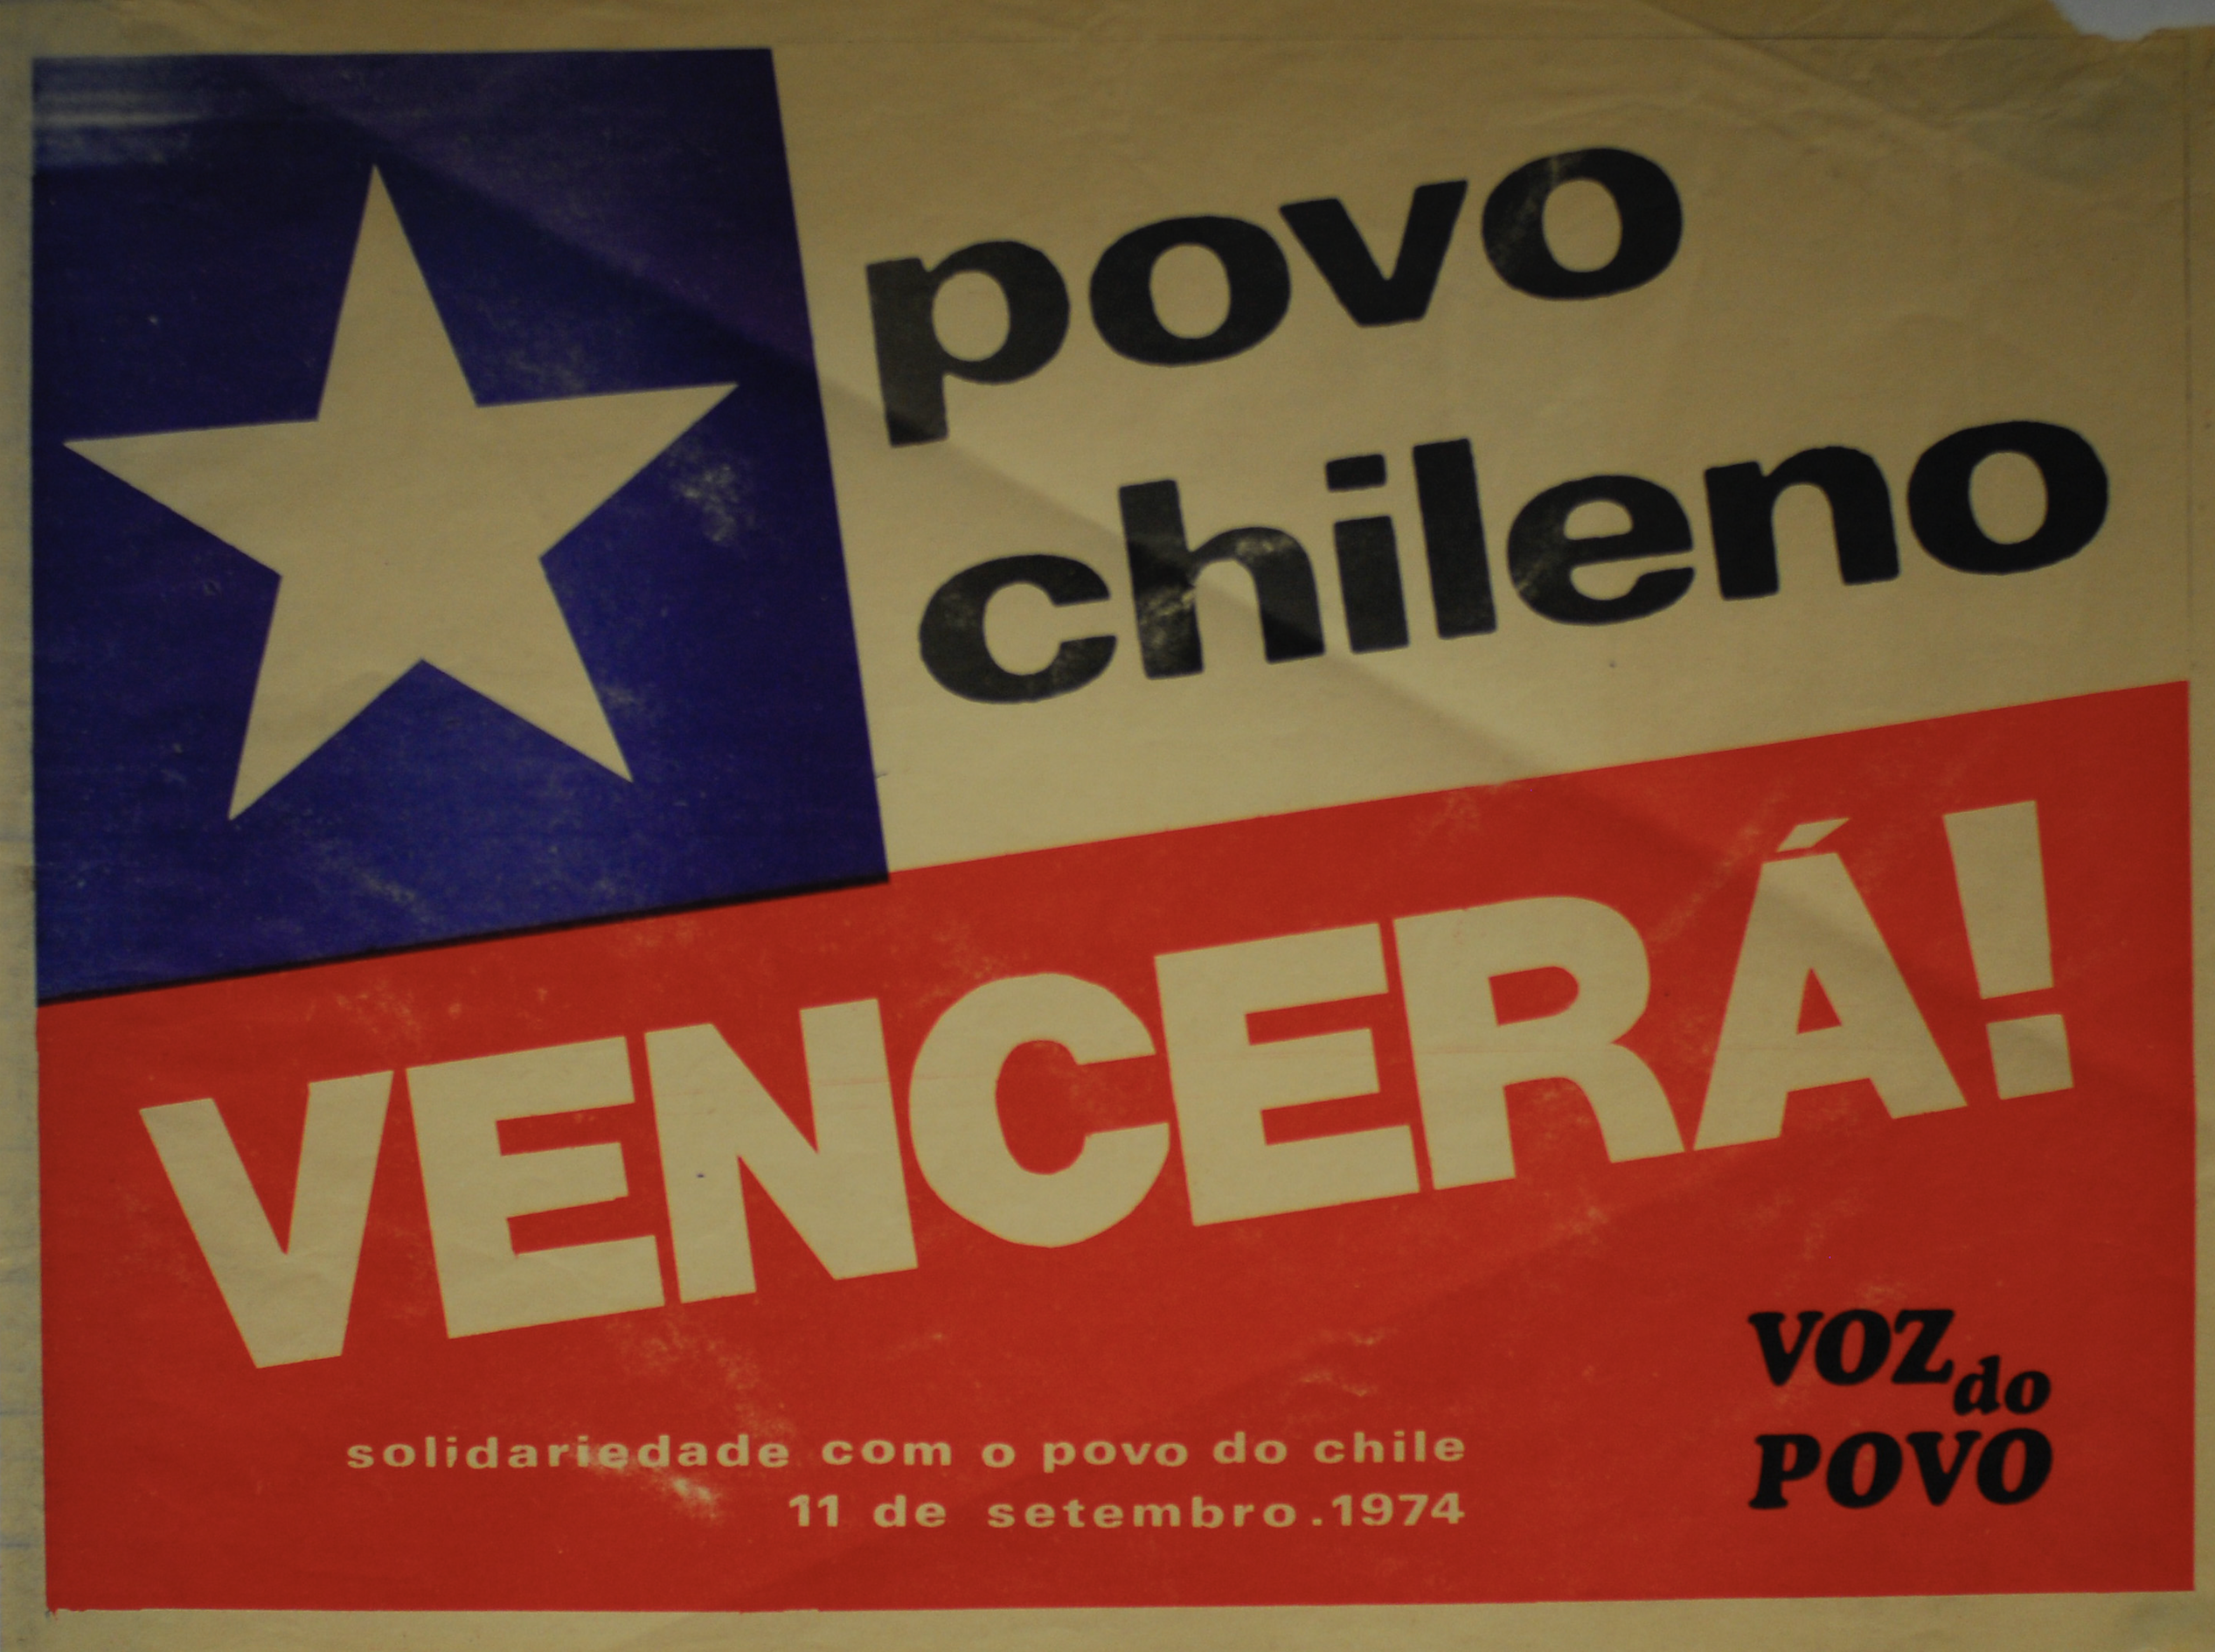 Povo chileno vencerá